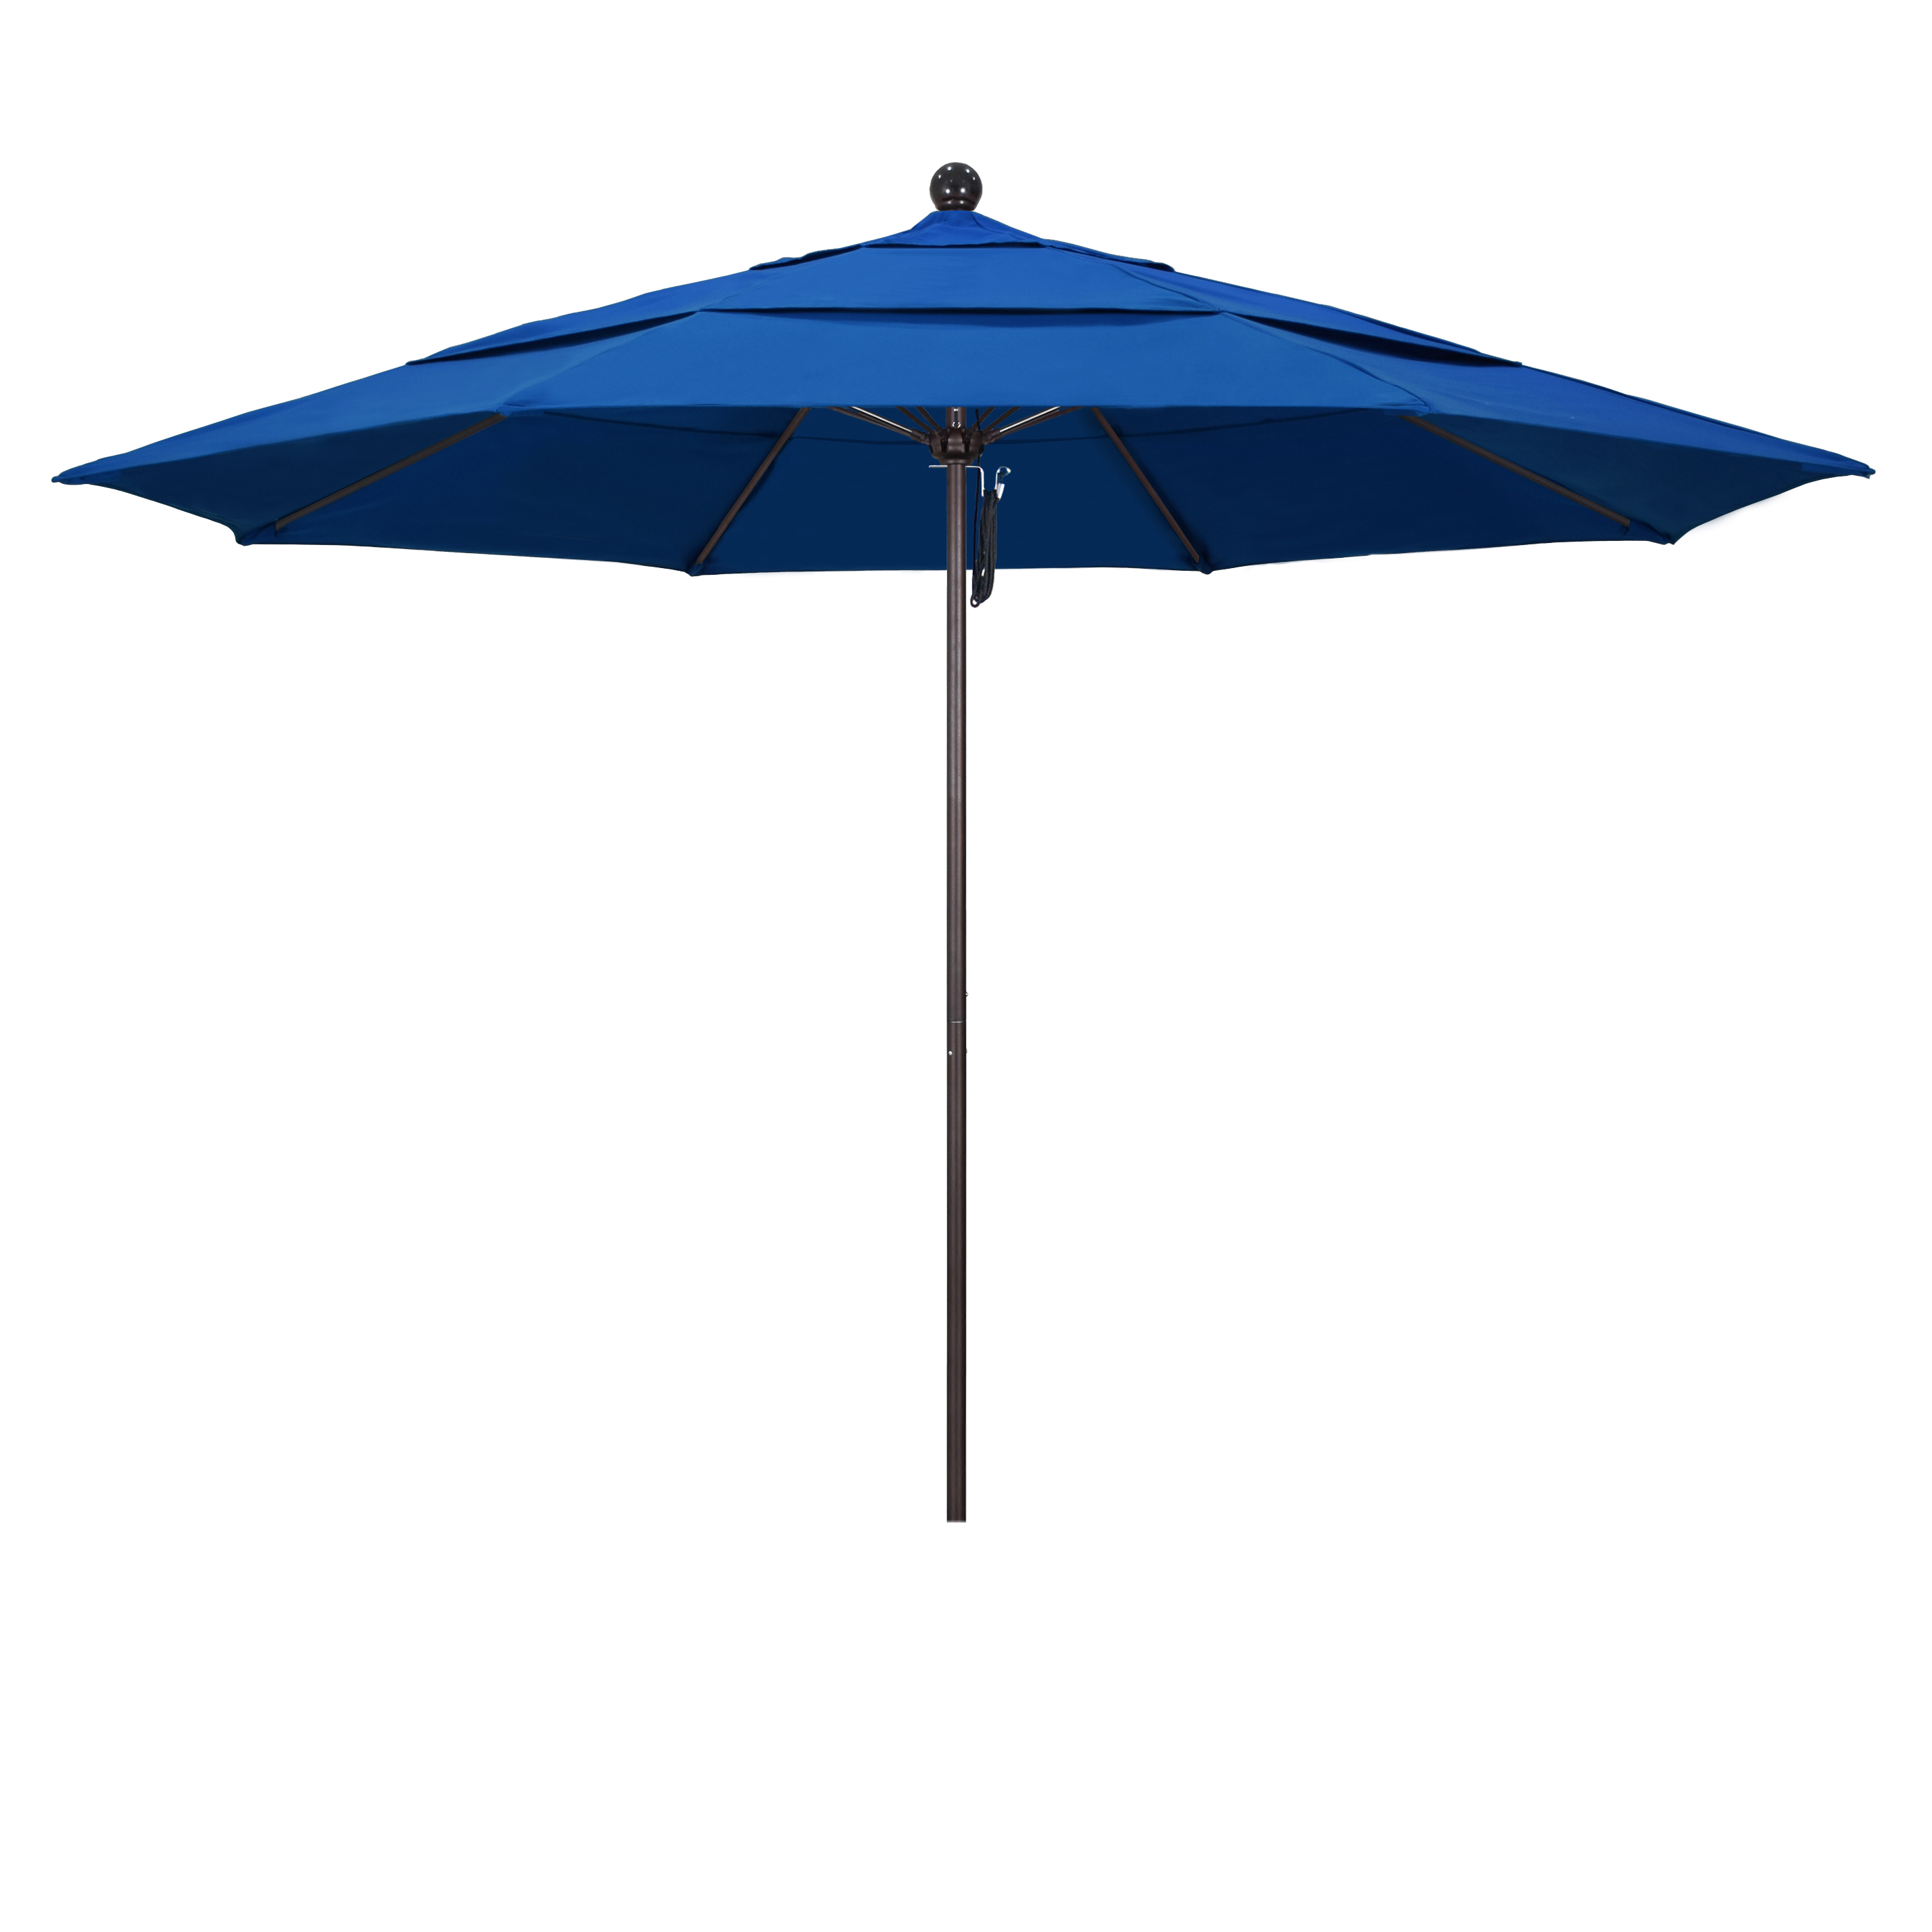 Picture of California Umbrella ALTO118117-SA01-DWV 11 ft. Fiberglass Pulley Open Double Vents Market Umbrella - Bronze and Pacifica-Pacific Blue